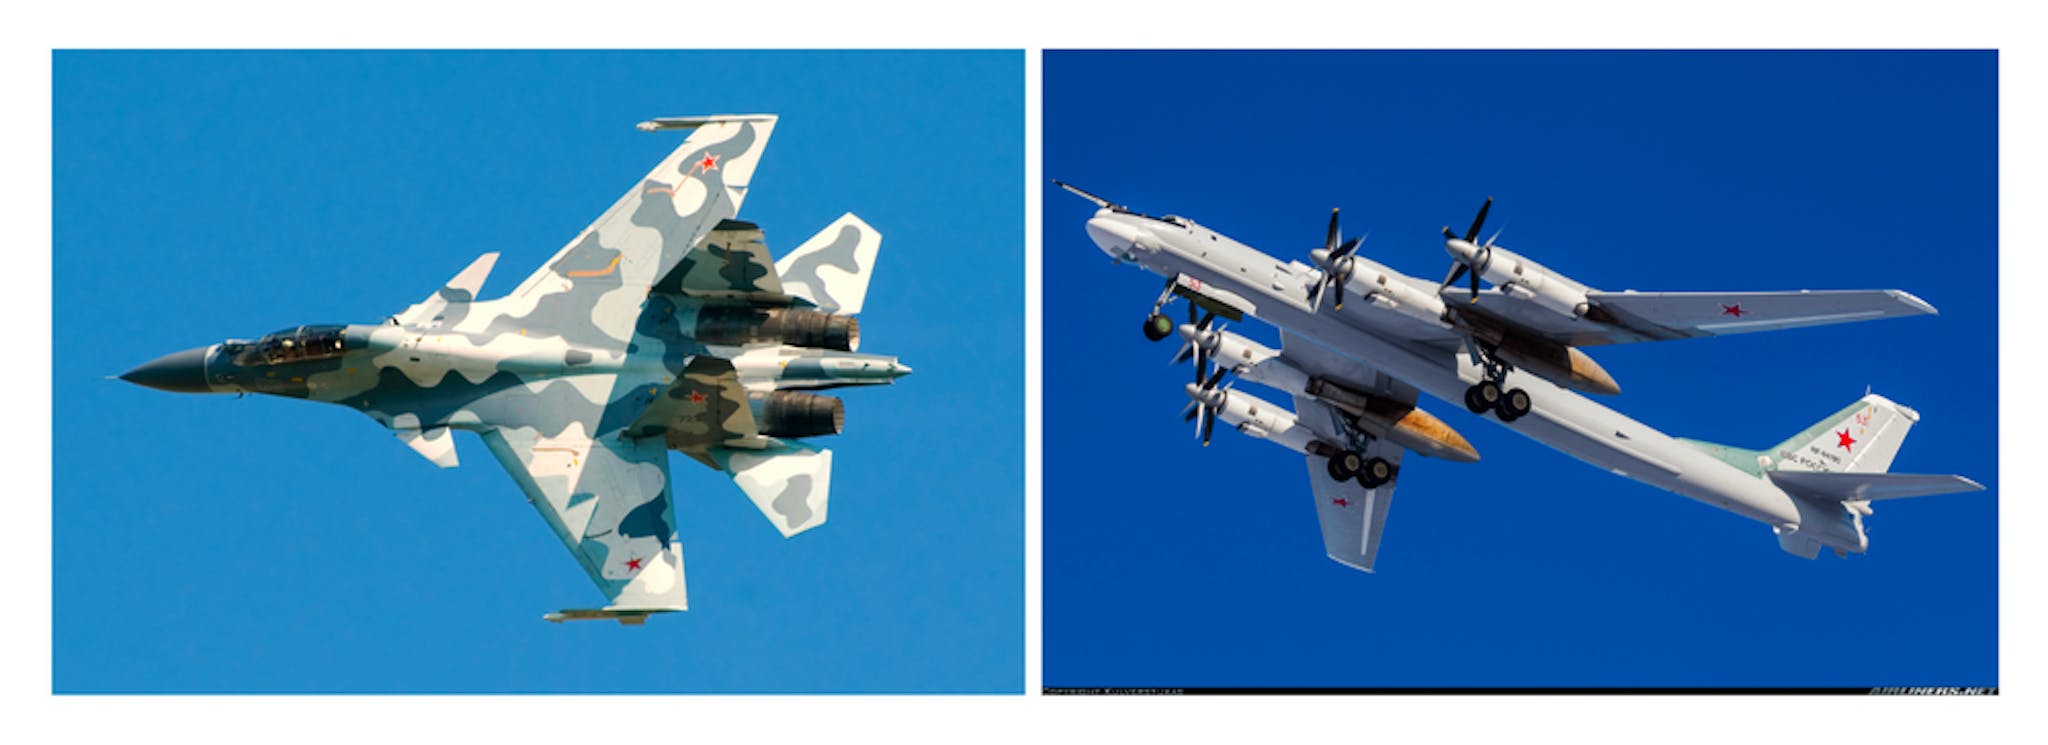 De izquierda a derecha: (1) Su-30, (2) Tu-95